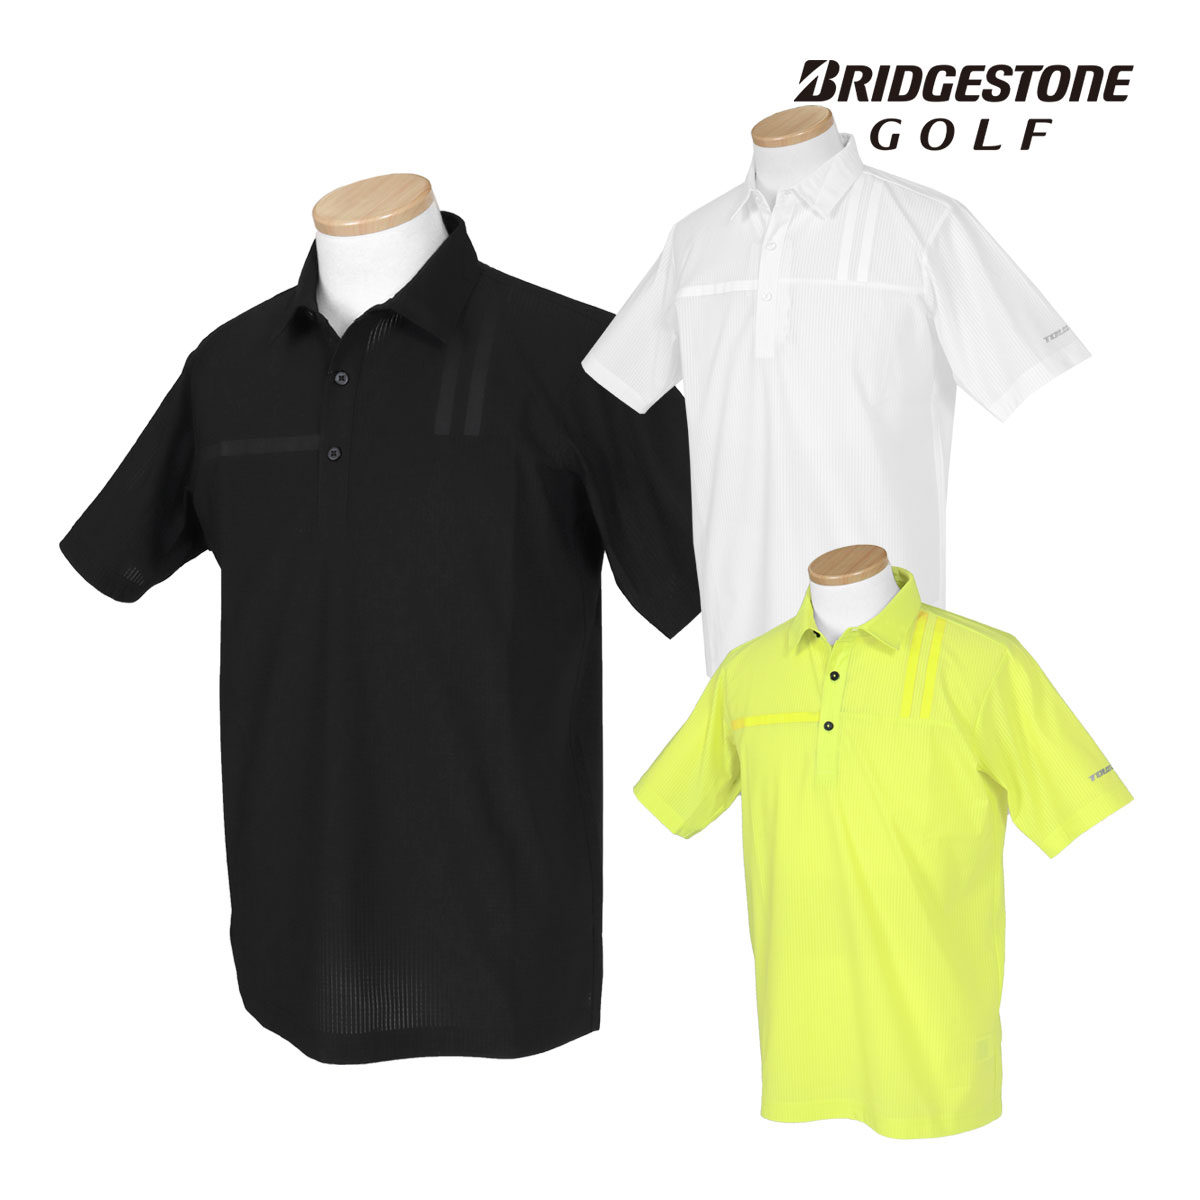 BridgestoneGolf ブリヂストンゴルフ TOUR B 春夏ウエア 半袖シャツ 「3GN01A」